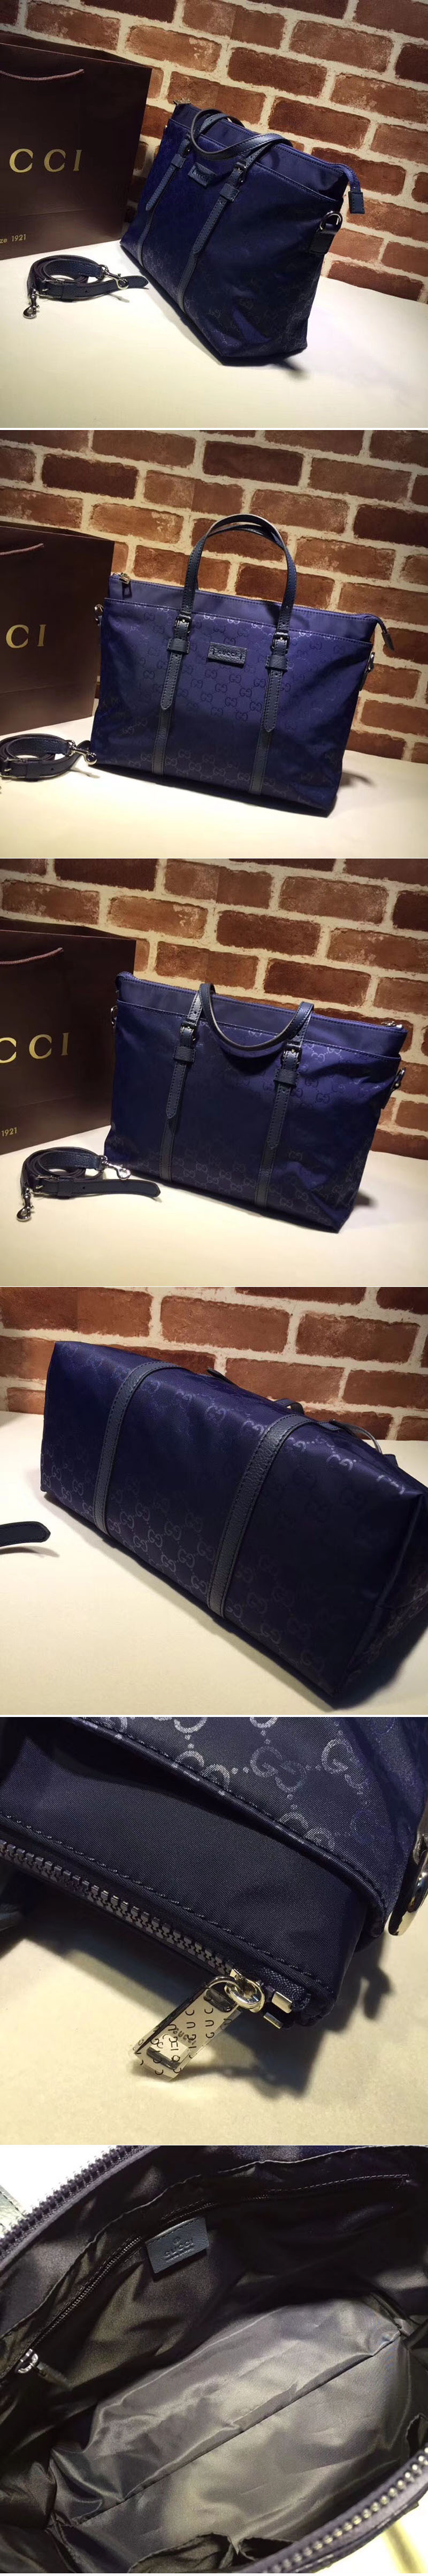 Replica Gucci 387067 GG pattern guccissima Tote Bags Blue